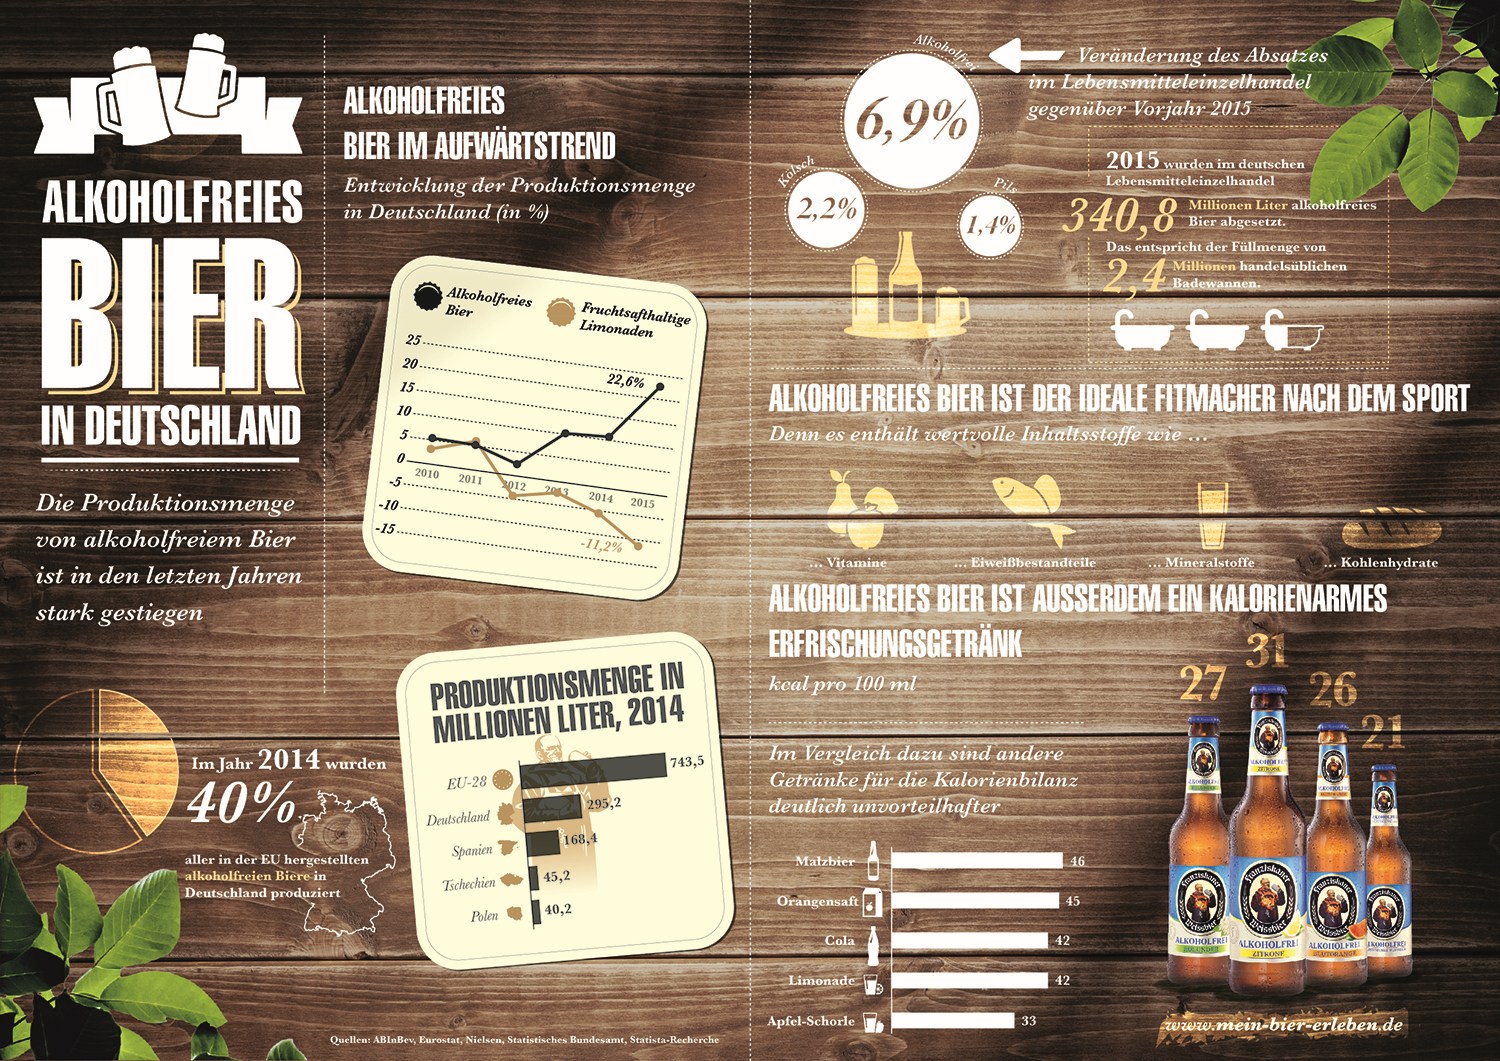 grafik-statista-alkoholfreies-bier-fitmacher-absatz-de